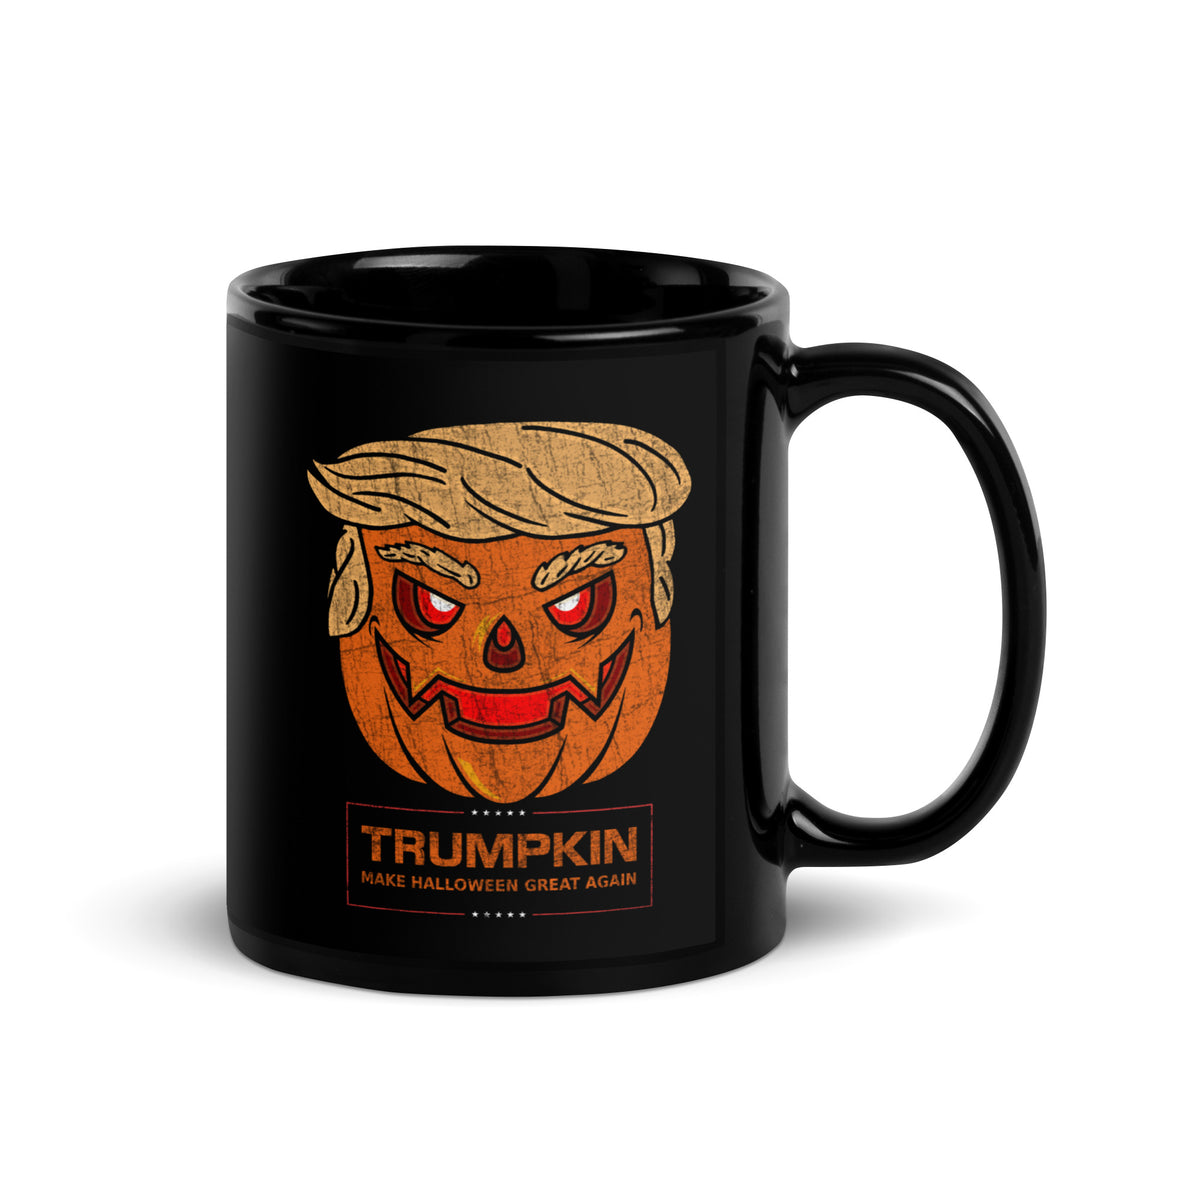 TRUMPKIN: Make Halloween Great Again! Mug